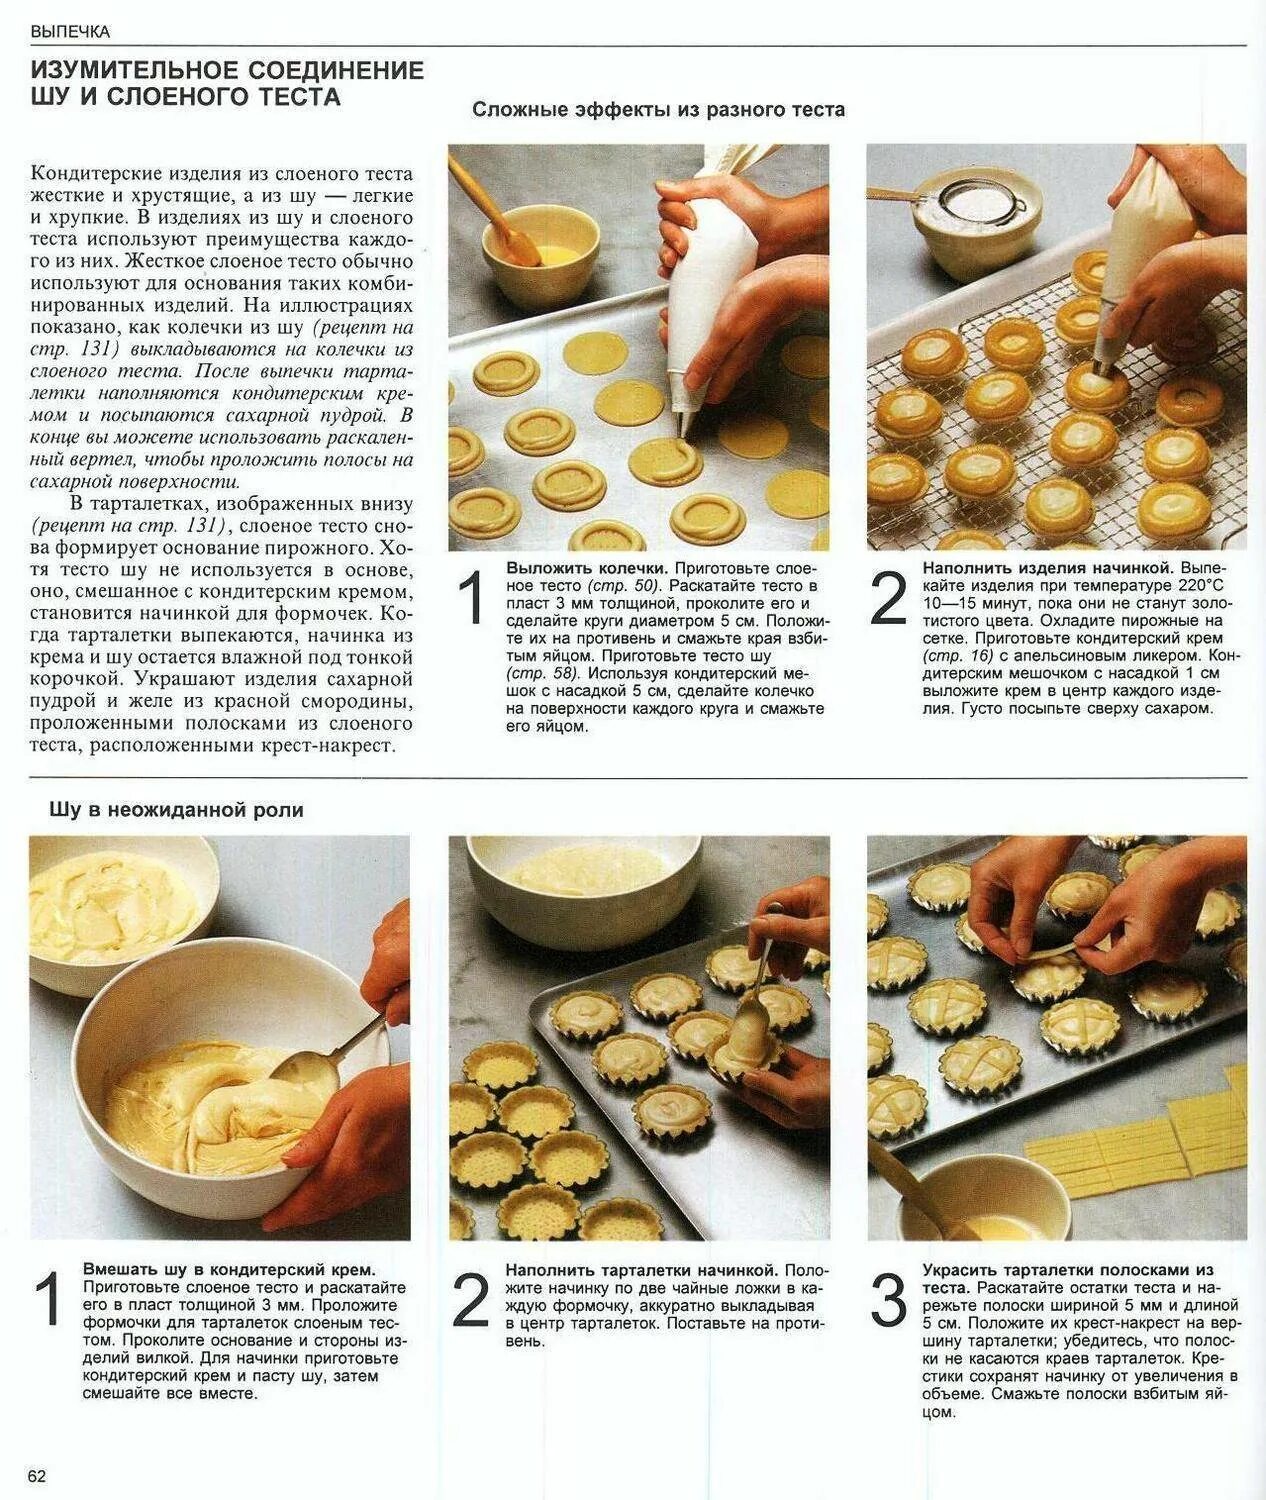 Рецепты печенья пошагово. Рецепты выпечки. Легкий рецепт выпечки. Рецепты простой выпечки в картинках. Кулинарные рецепты с фотографиями пошагового приготовления.